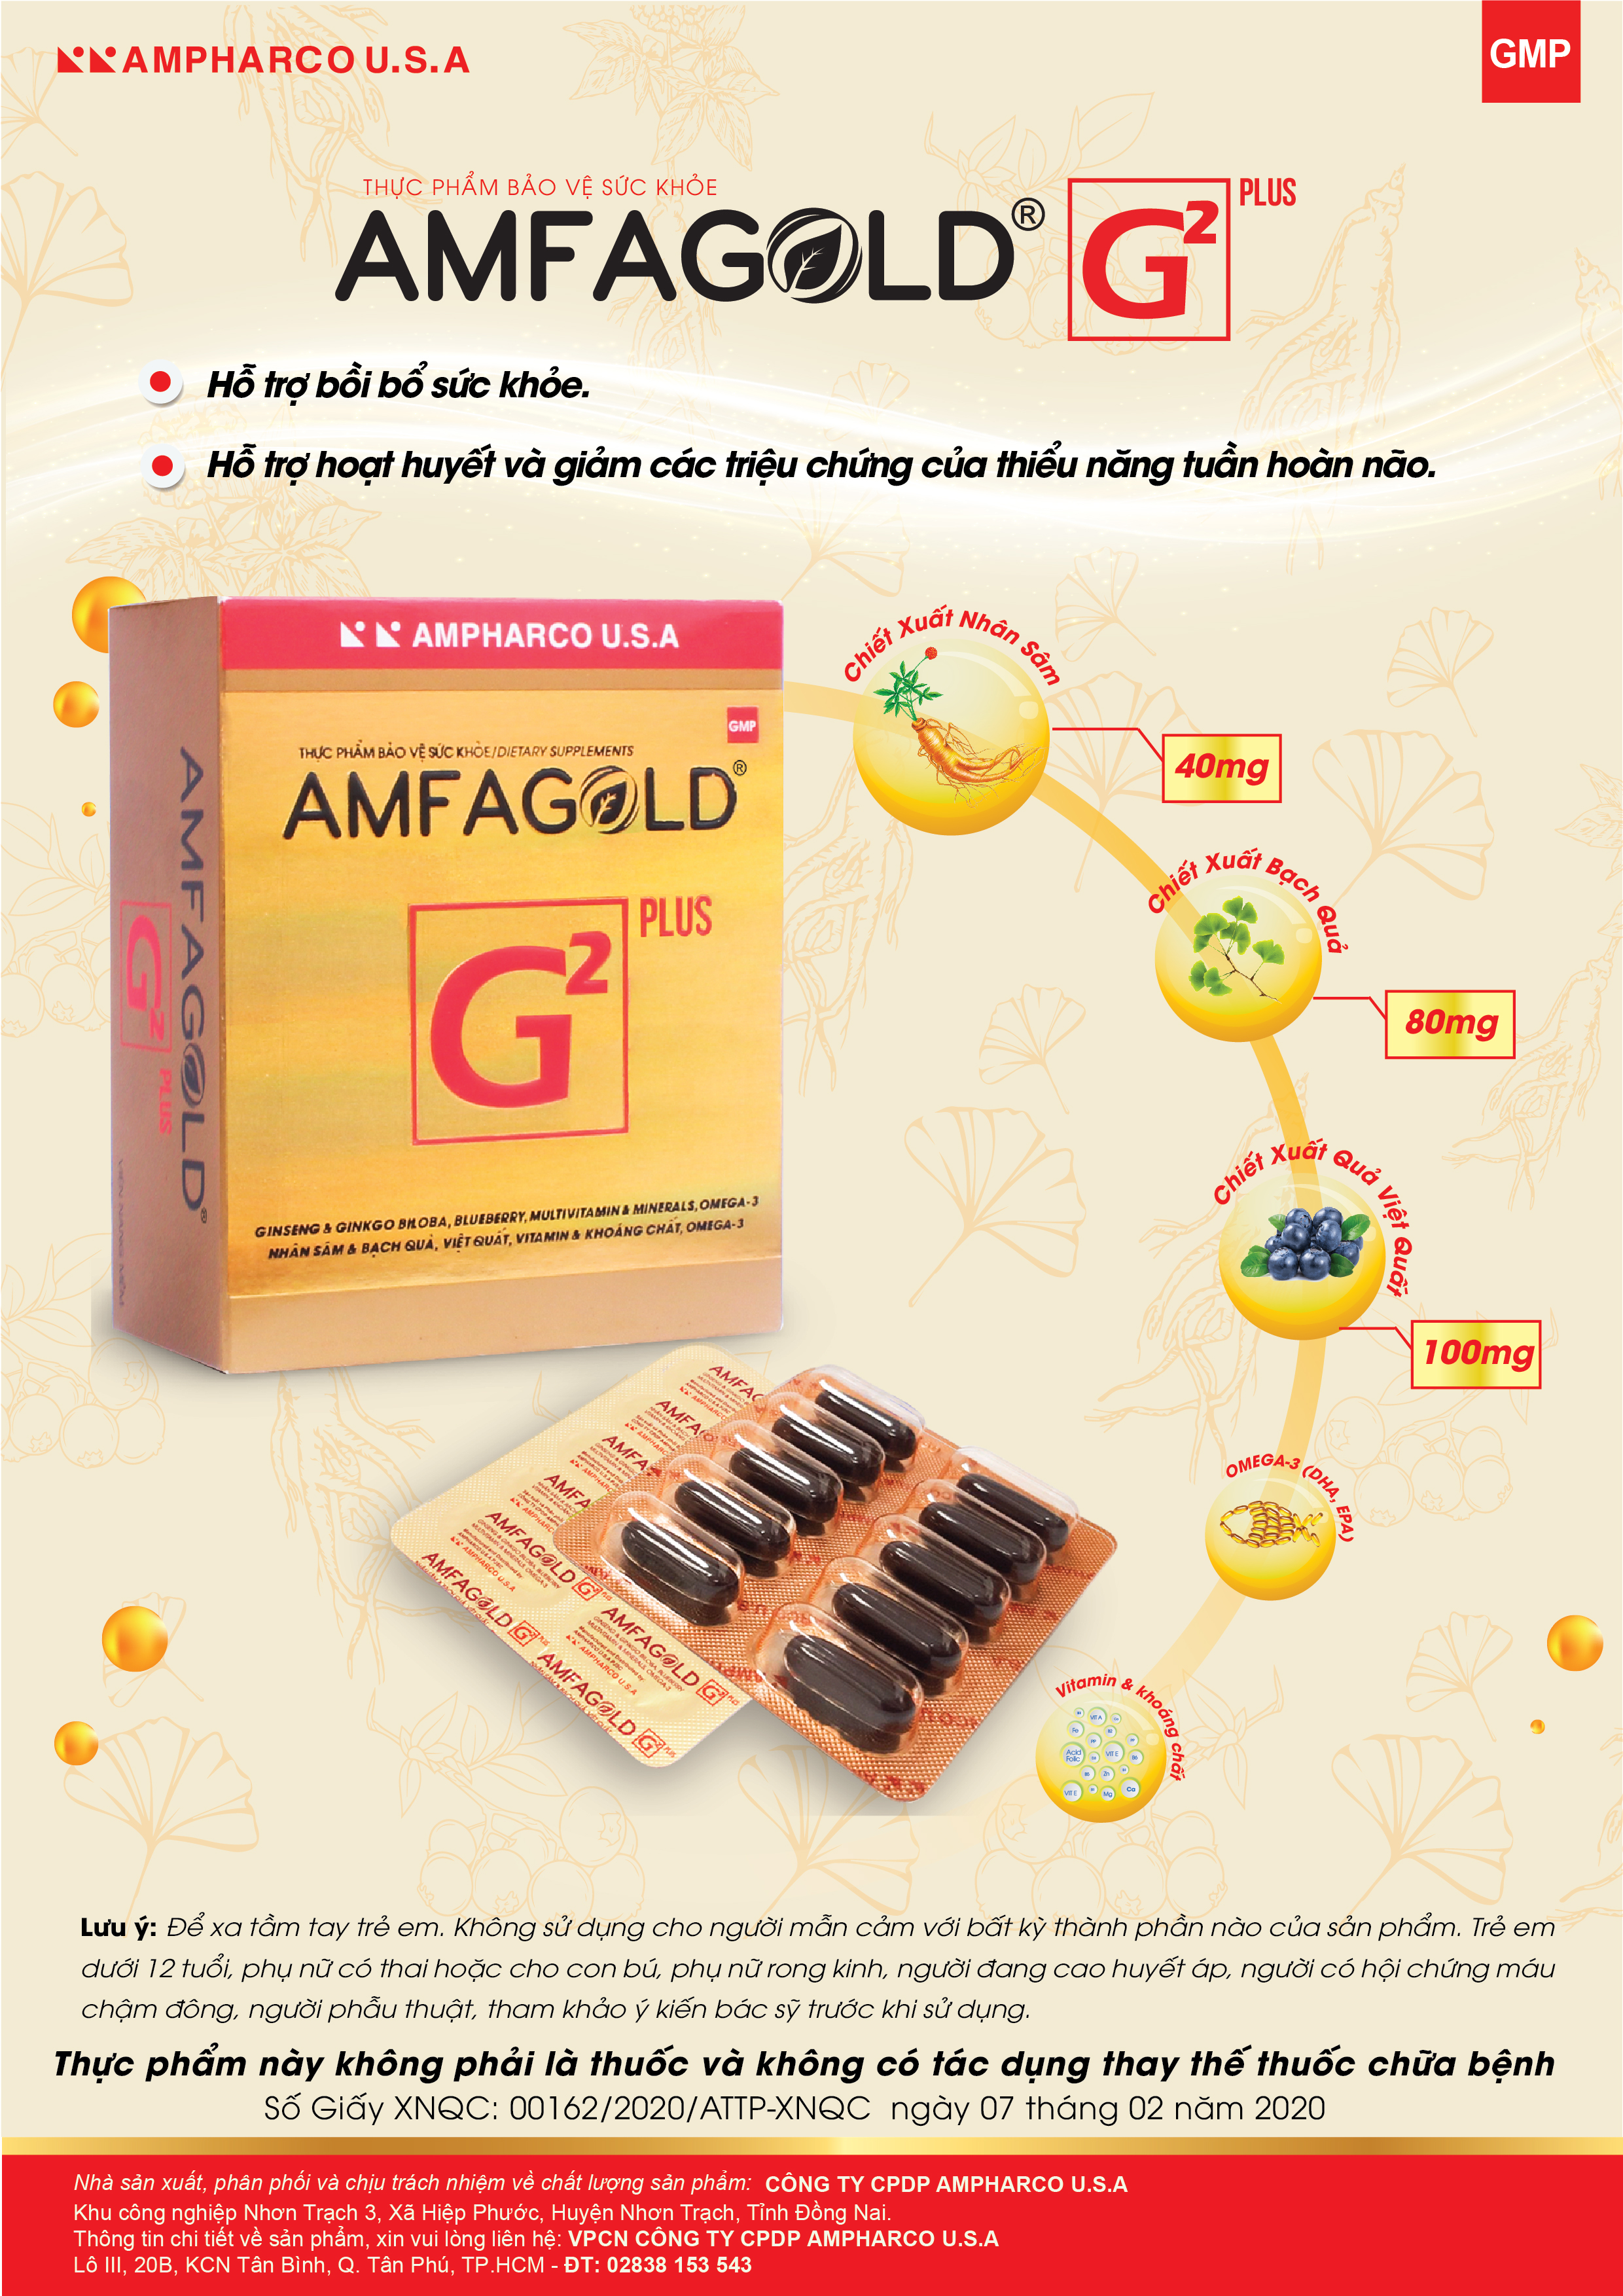 Viên uống Amfagold G2 Plus giúp bồi bổ sức khoẻ, giúp hoạt huyết và hỗ trợ giảm các triệu chứng của thiểu năng tuần hoàn não - Hộp 30 viên